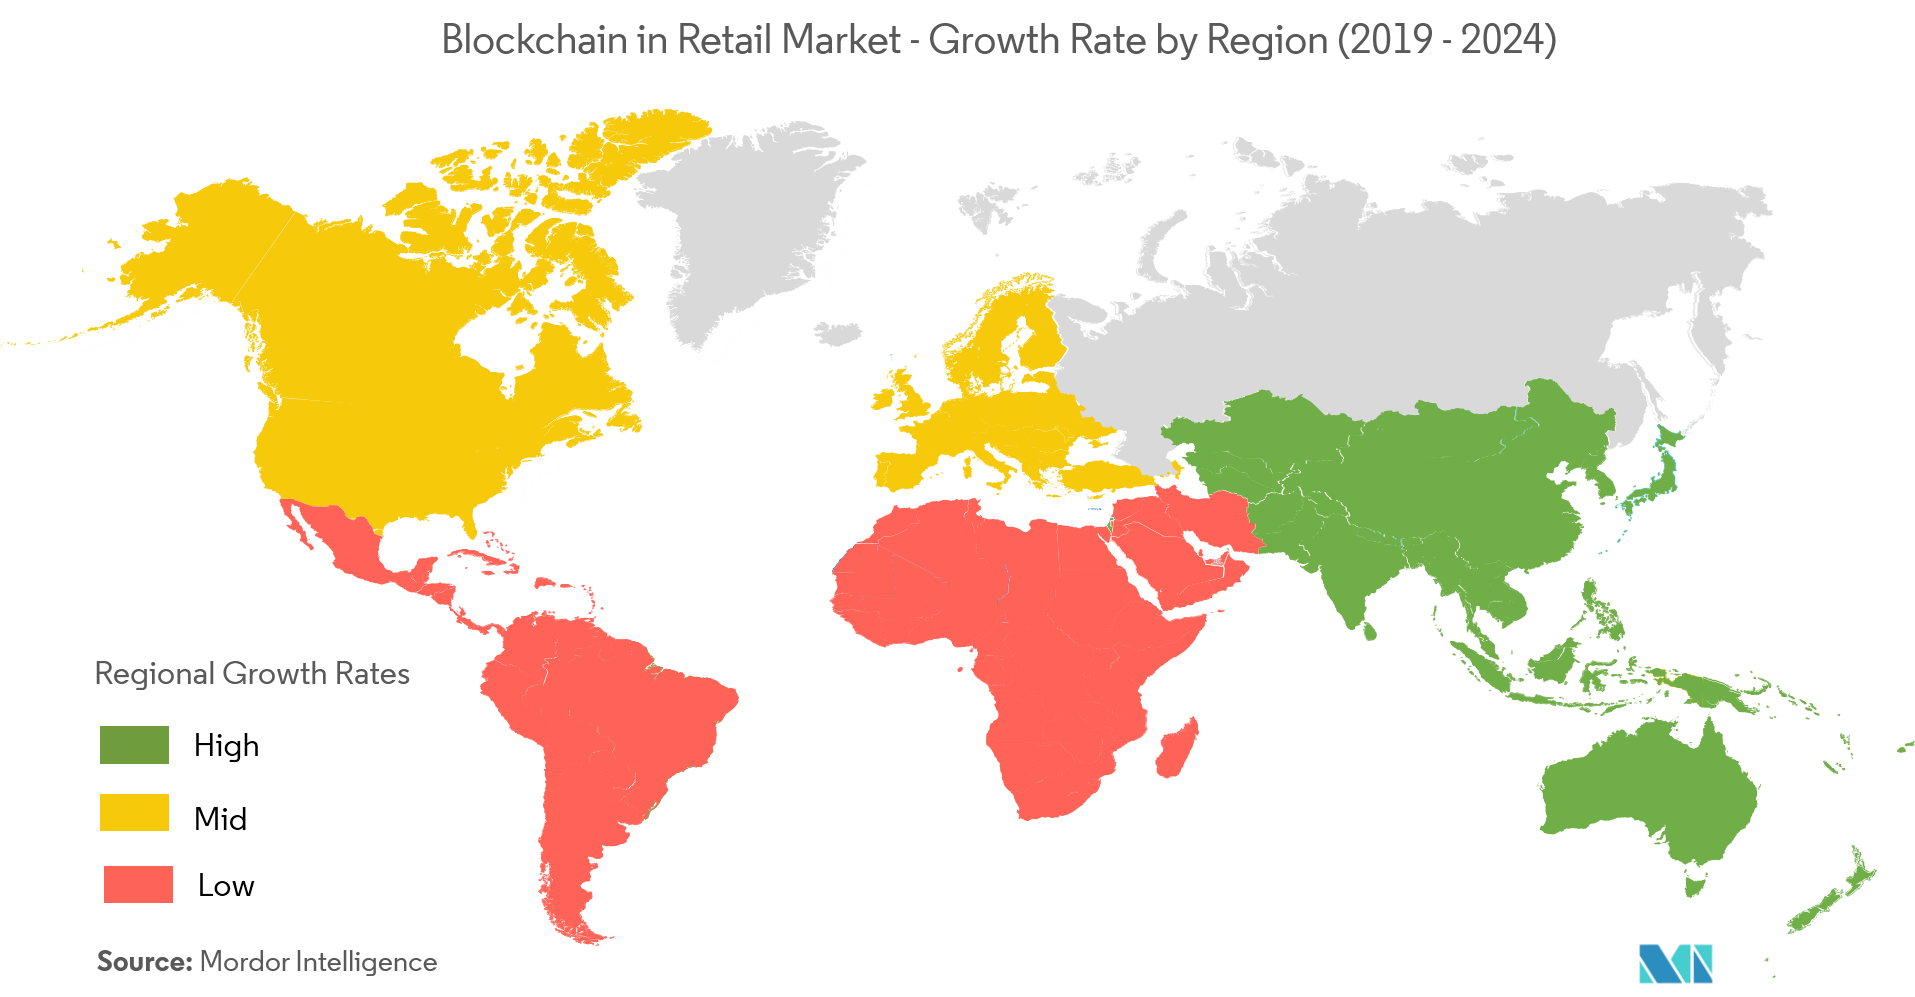 Blockchain in Retail Market Growth by Region